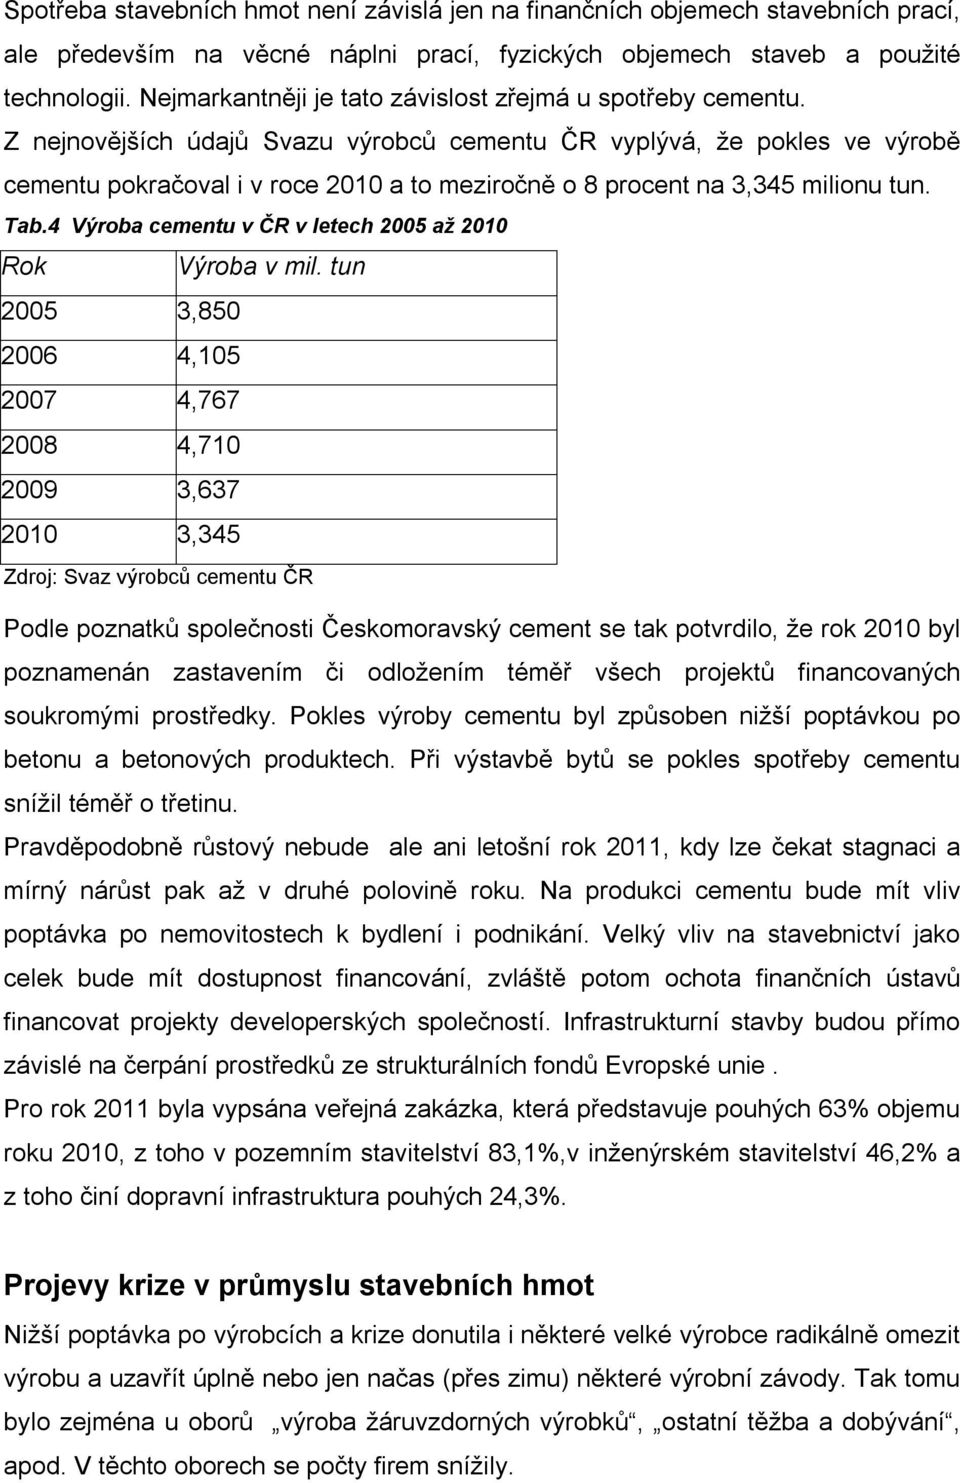 Z nejnovějších údajů Svazu výrobců cementu ČR vyplývá, že pokles ve výrobě cementu pokračoval i v roce 2010 a to meziročně o 8 procent na 3,345 milionu tun. Tab.